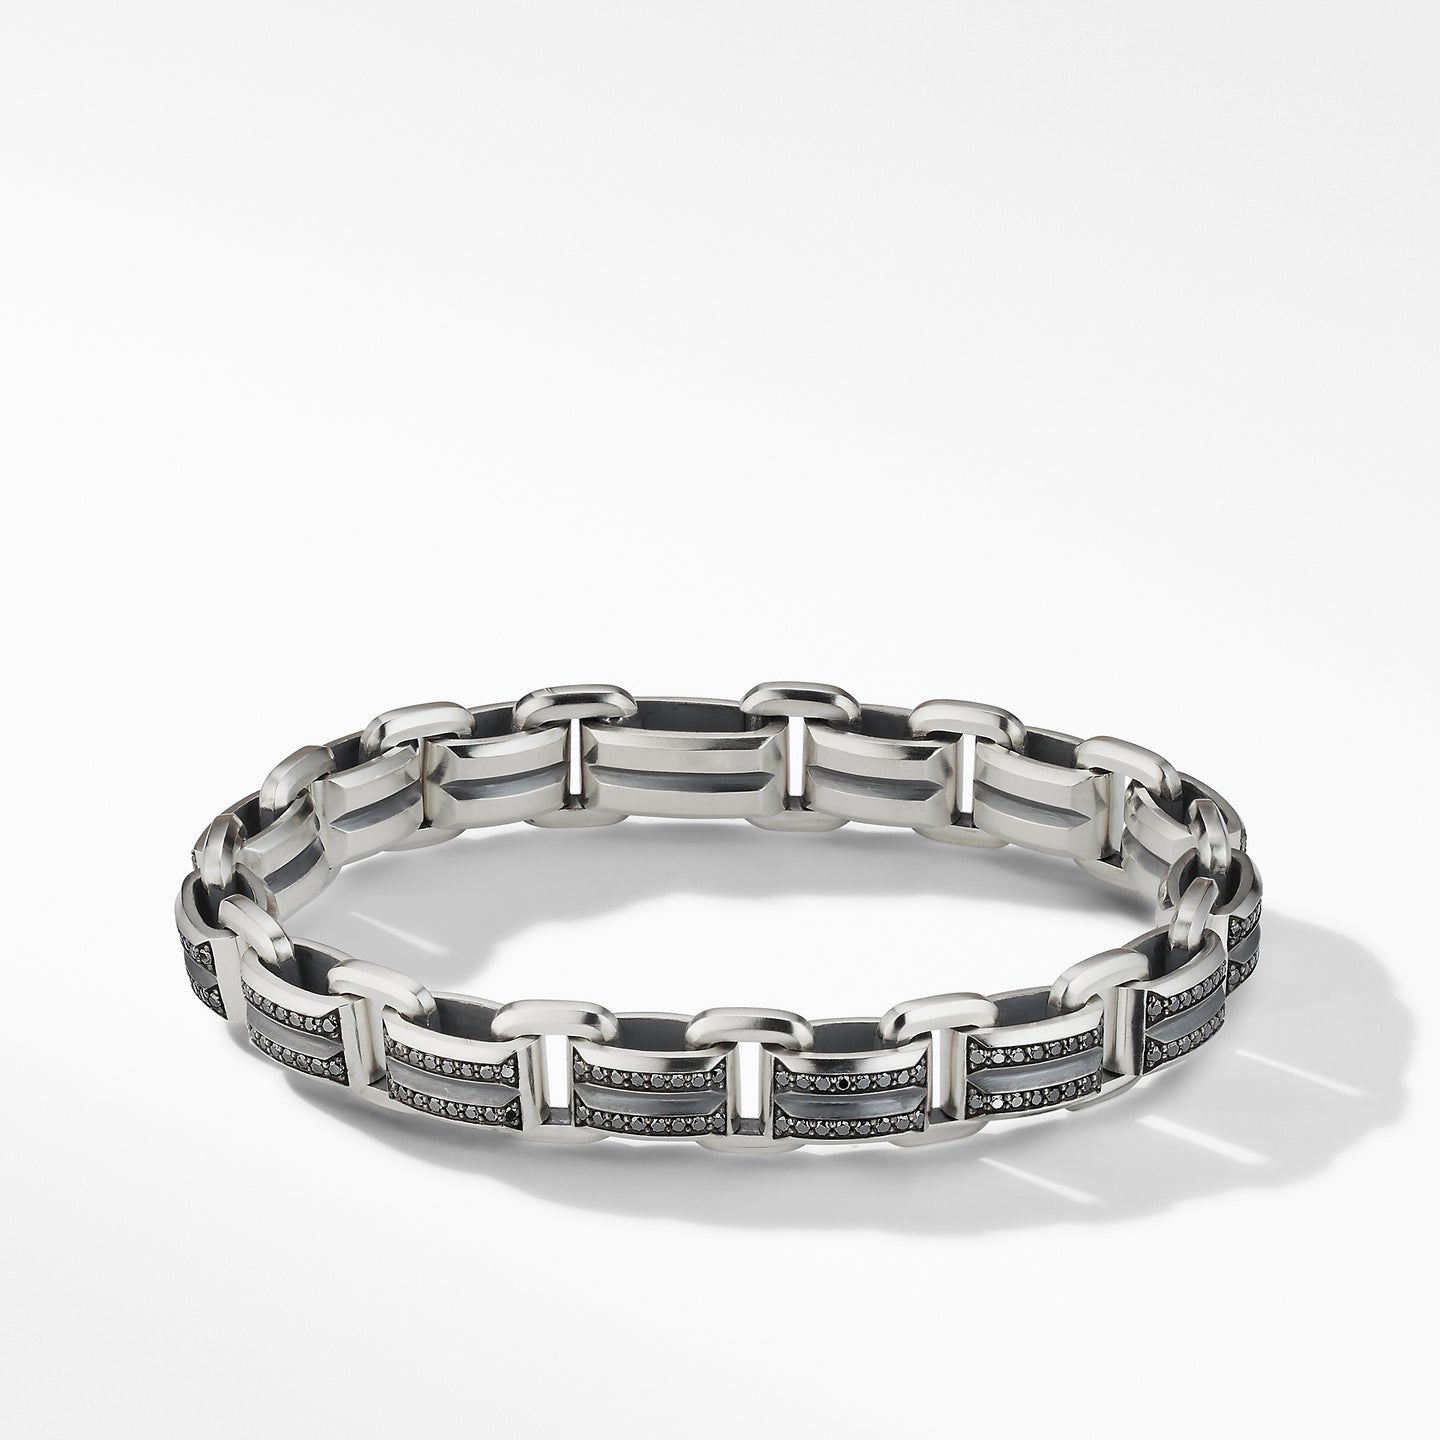 Beveled Link Bracelet with Pavé Black Diamonds, Size Medium